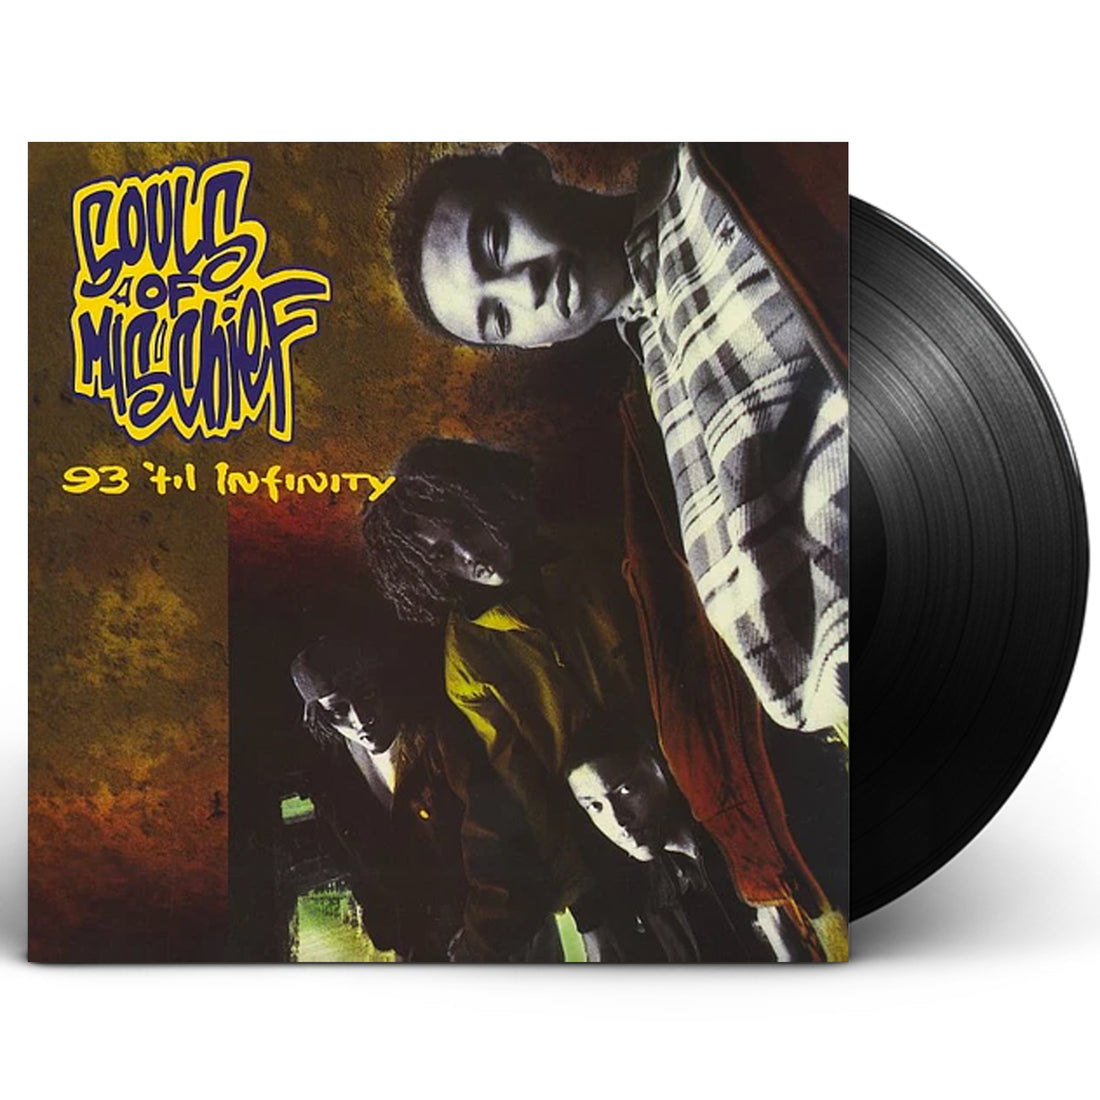 Souls Of Mischief "93 'Til Infinity" LP Vinyl